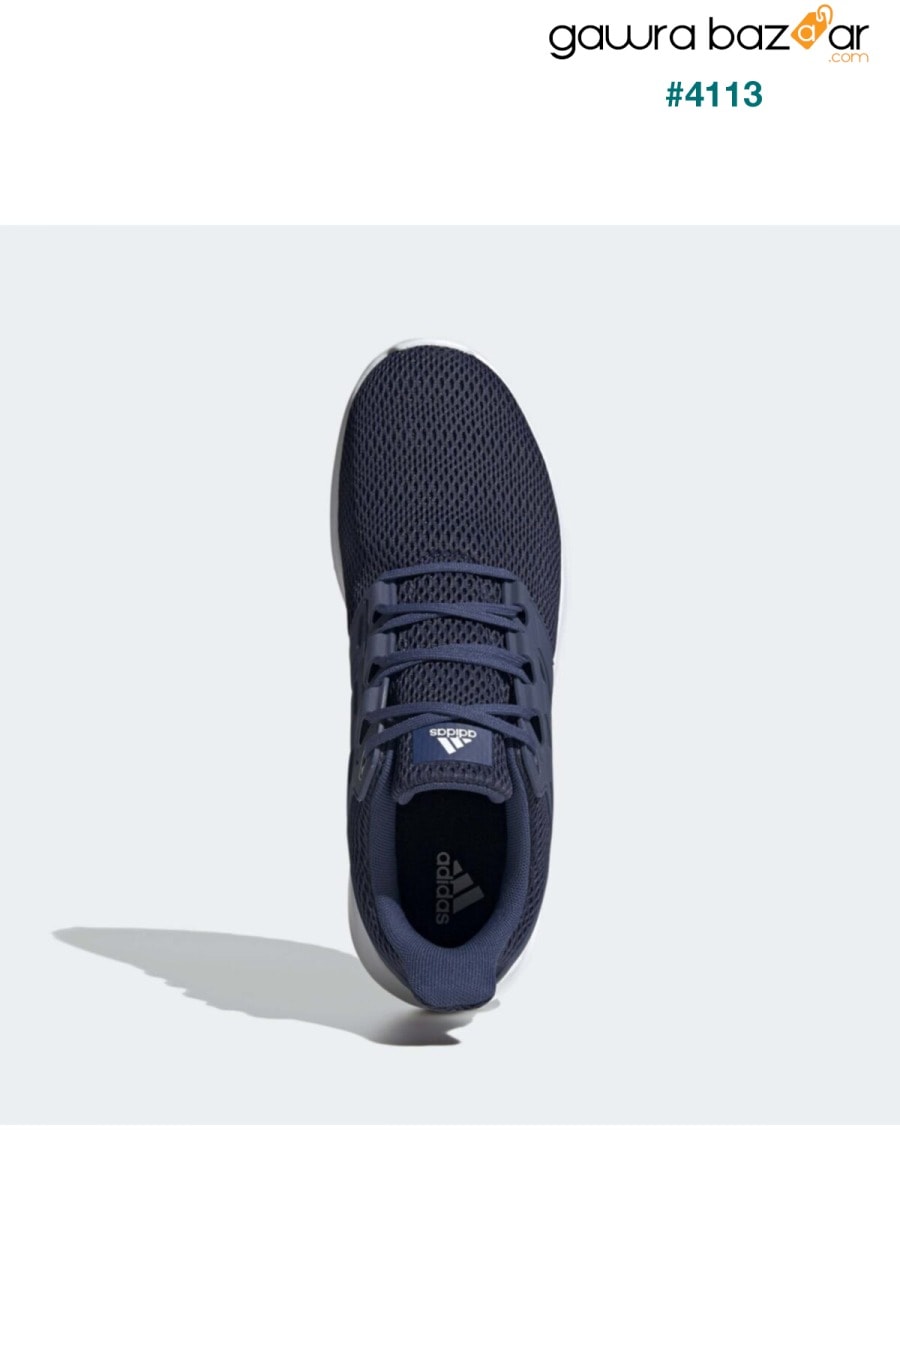 ULTIMASHOW حذاء الجري للرجال باللون الأزرق الداكن 100663973 adidas 1